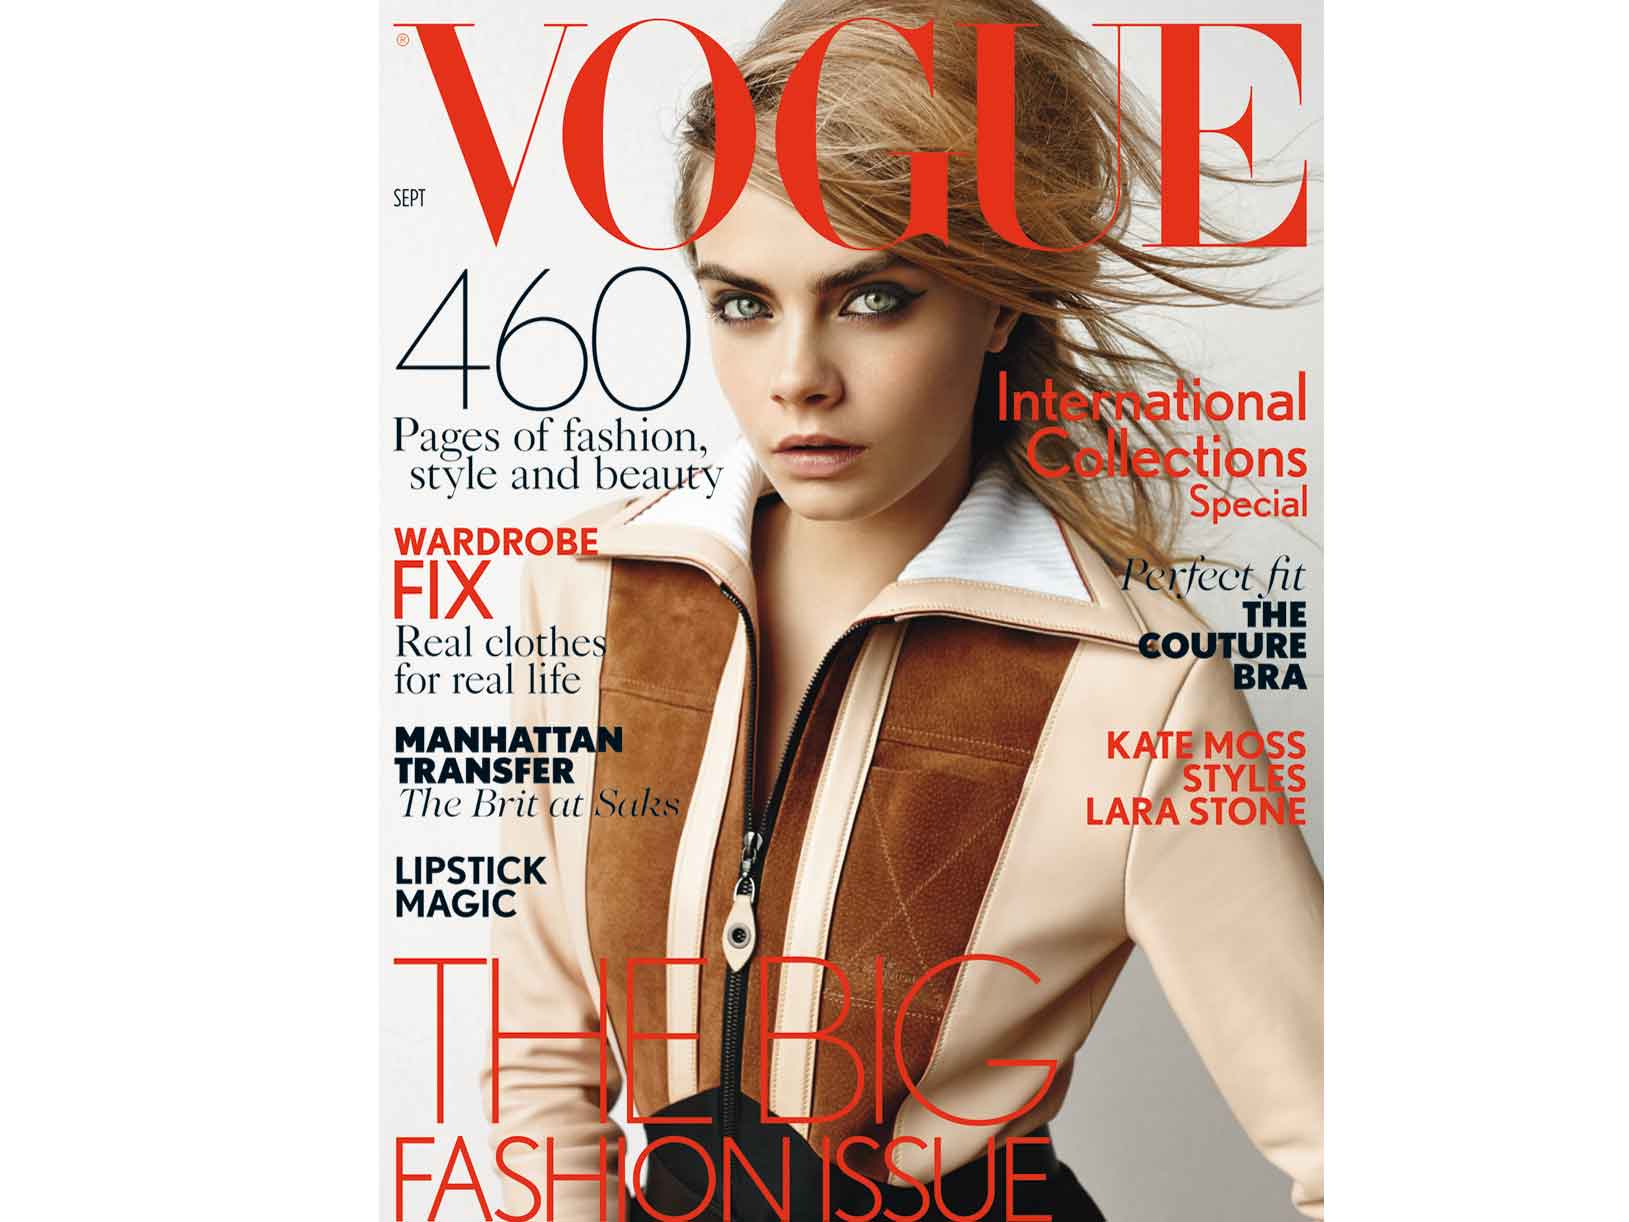 Vogue reveals September cover star Cara Delevingne, The Independent